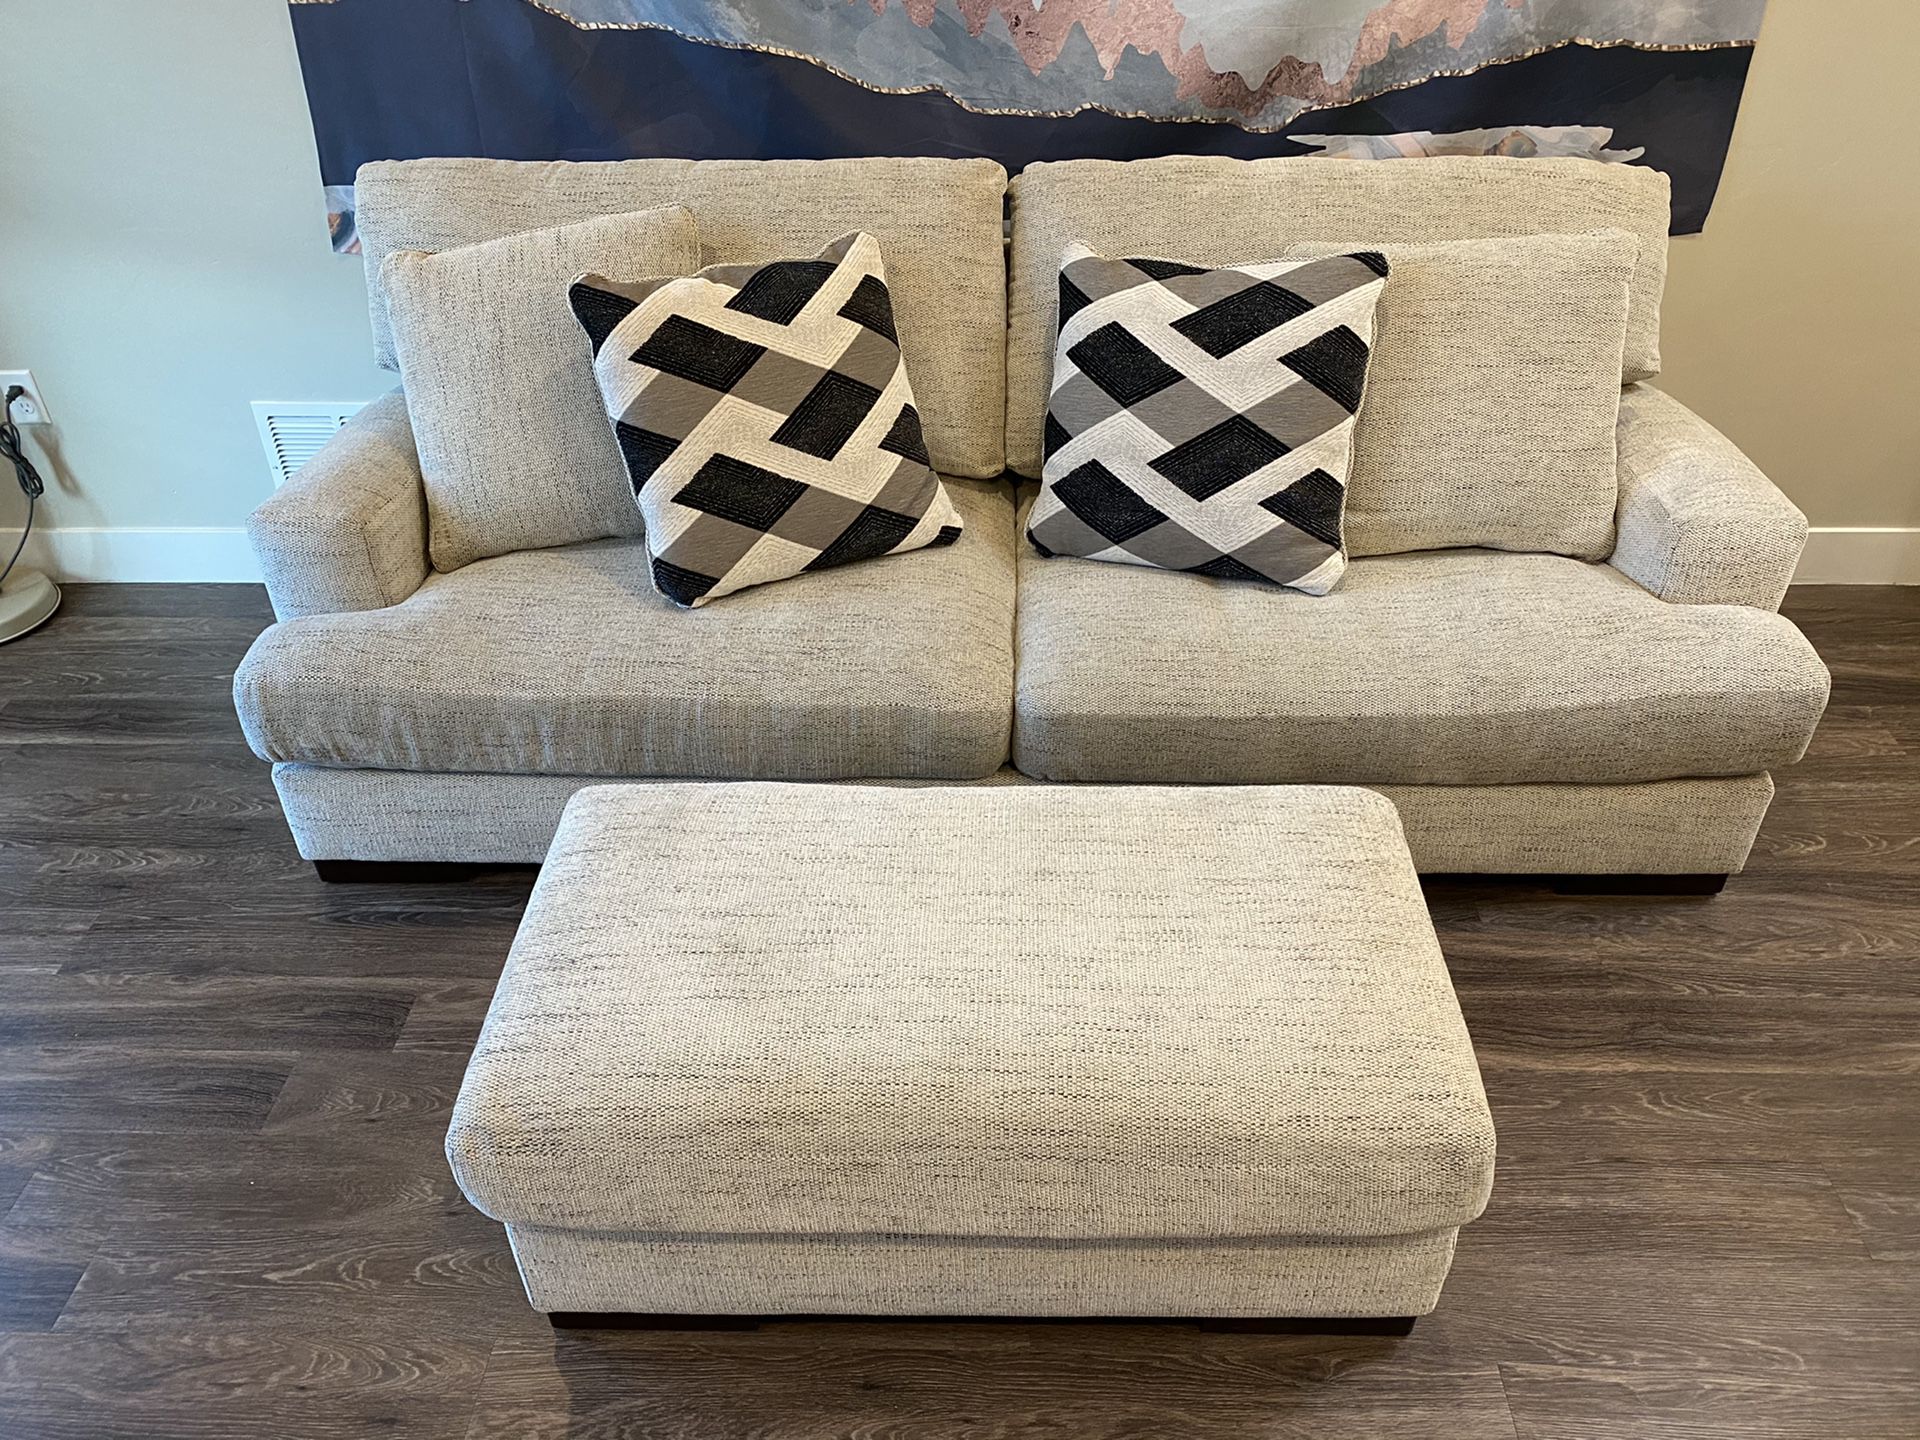 Comfy Sofa & Ottoman For Sale!